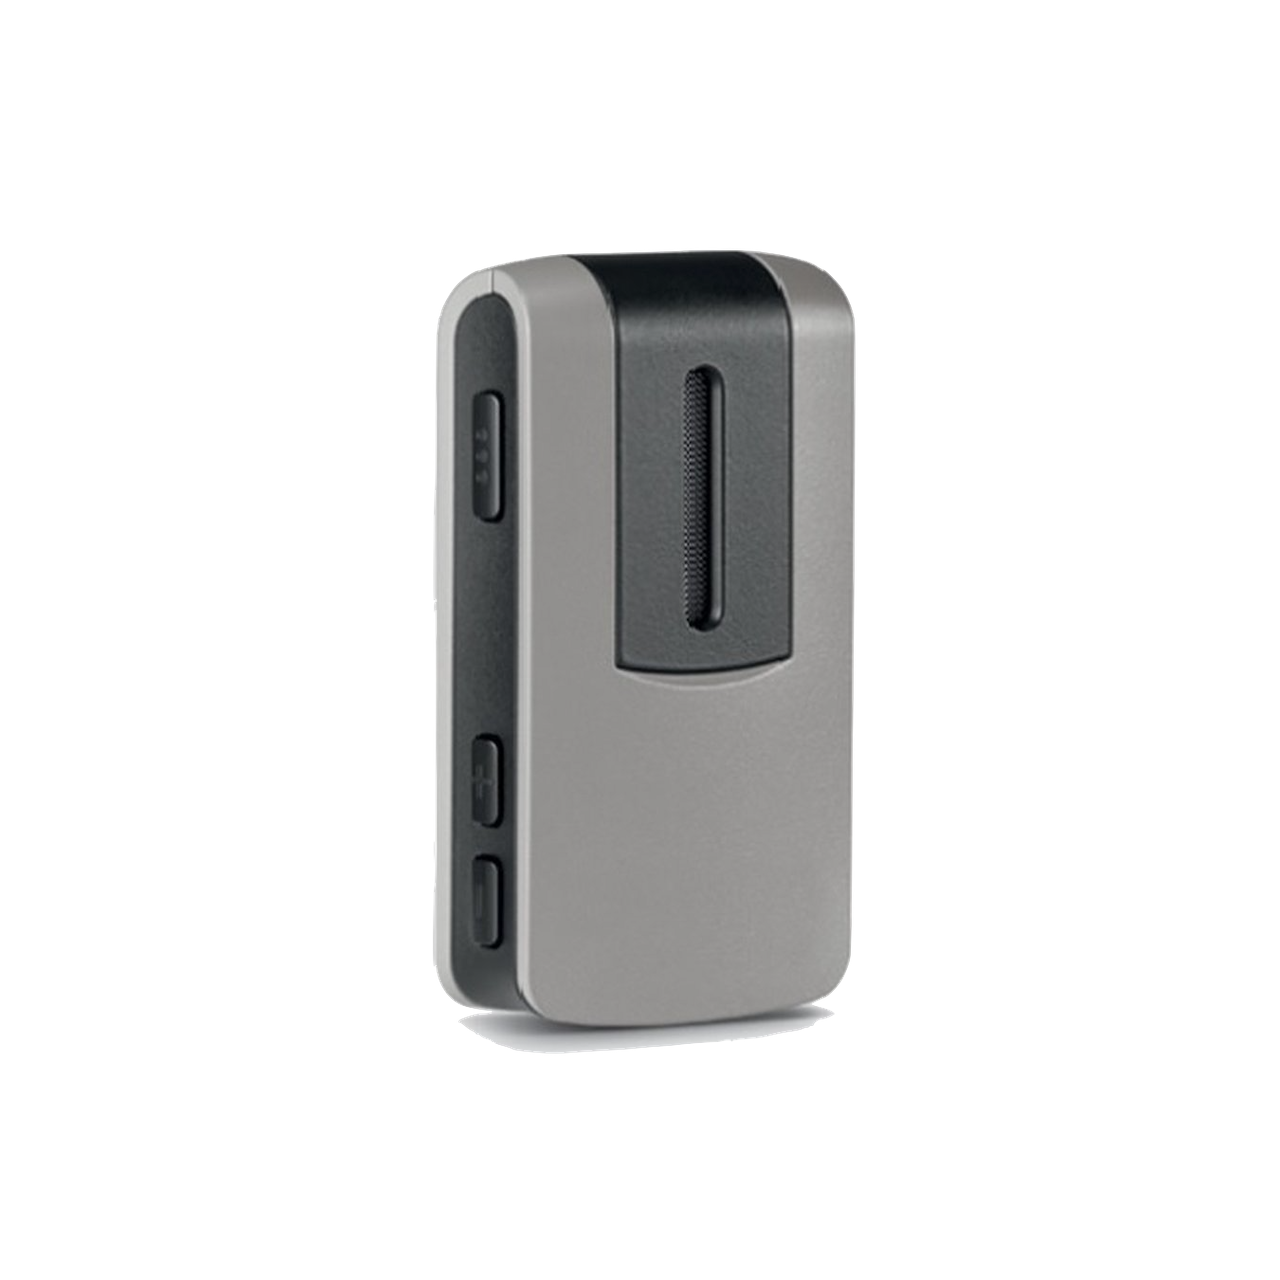 Das Smart Mic ermöglicht freihändige Telefonate und ist zusätzlich via Bluetooth als externes Mikrofon nutzbar.